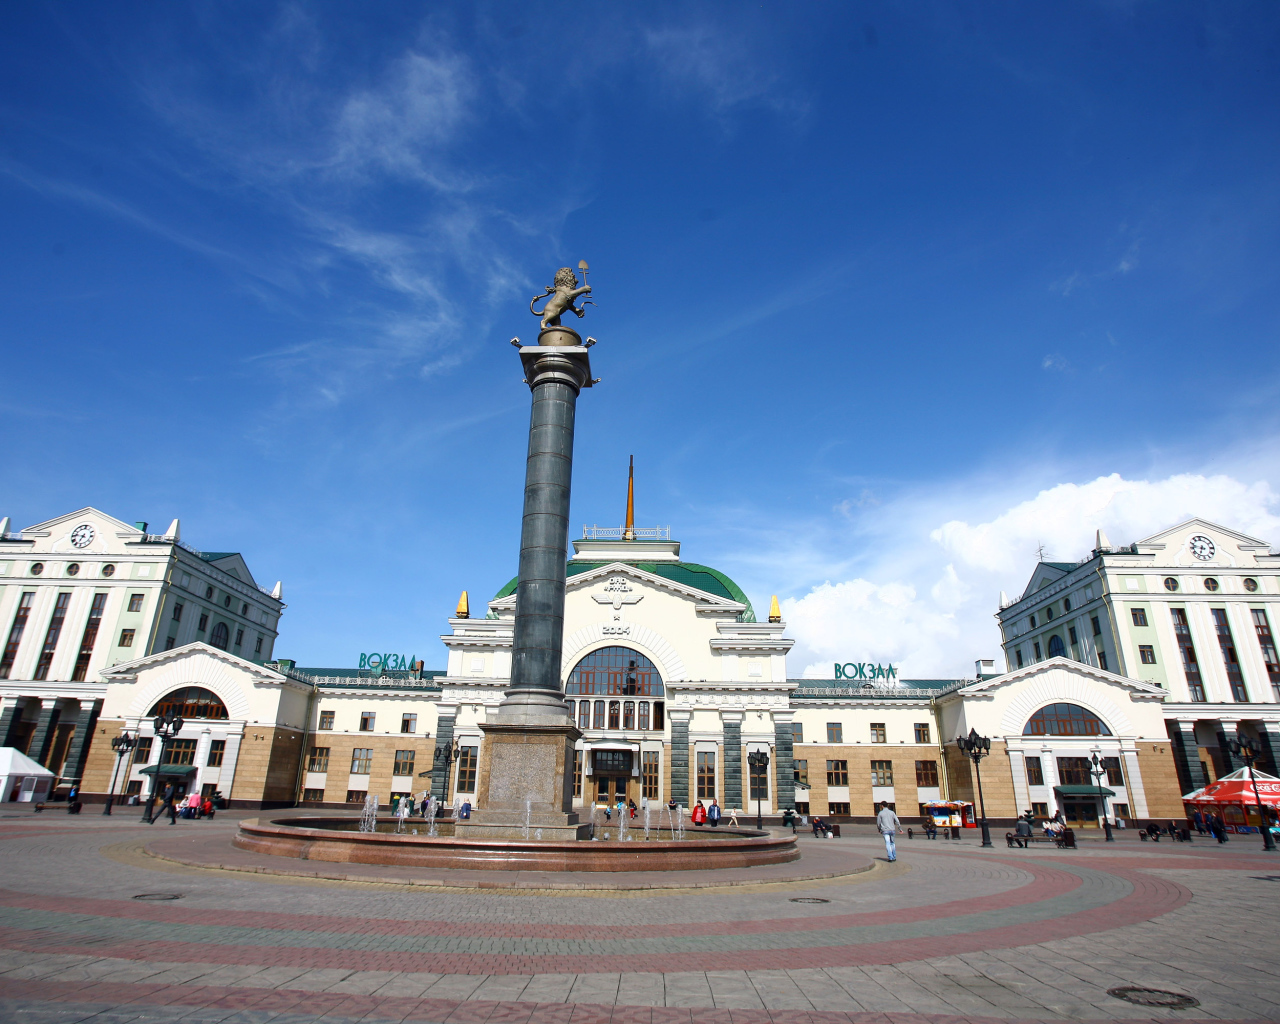 Памятник у здания железнодорожного вокзала под красивым голубым небом, Красноярск. Россия